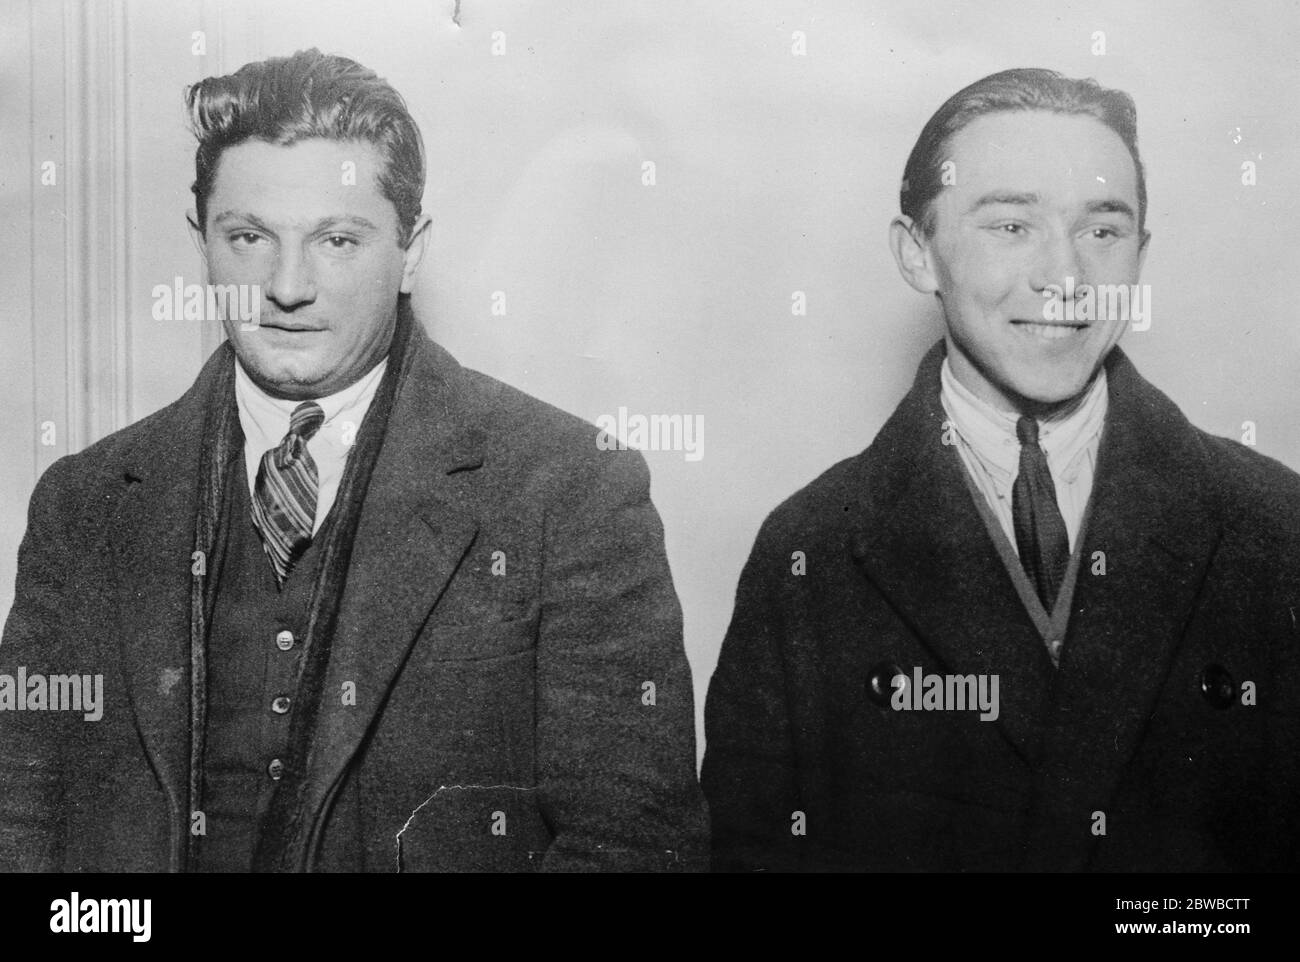 Vol de £200,000 gemme dans une pomme . Emile Souter (à droite) et Leon Kauffer , qui ont été arrêtés en relation avec le vol . 21 décembre 1926 Banque D'Images